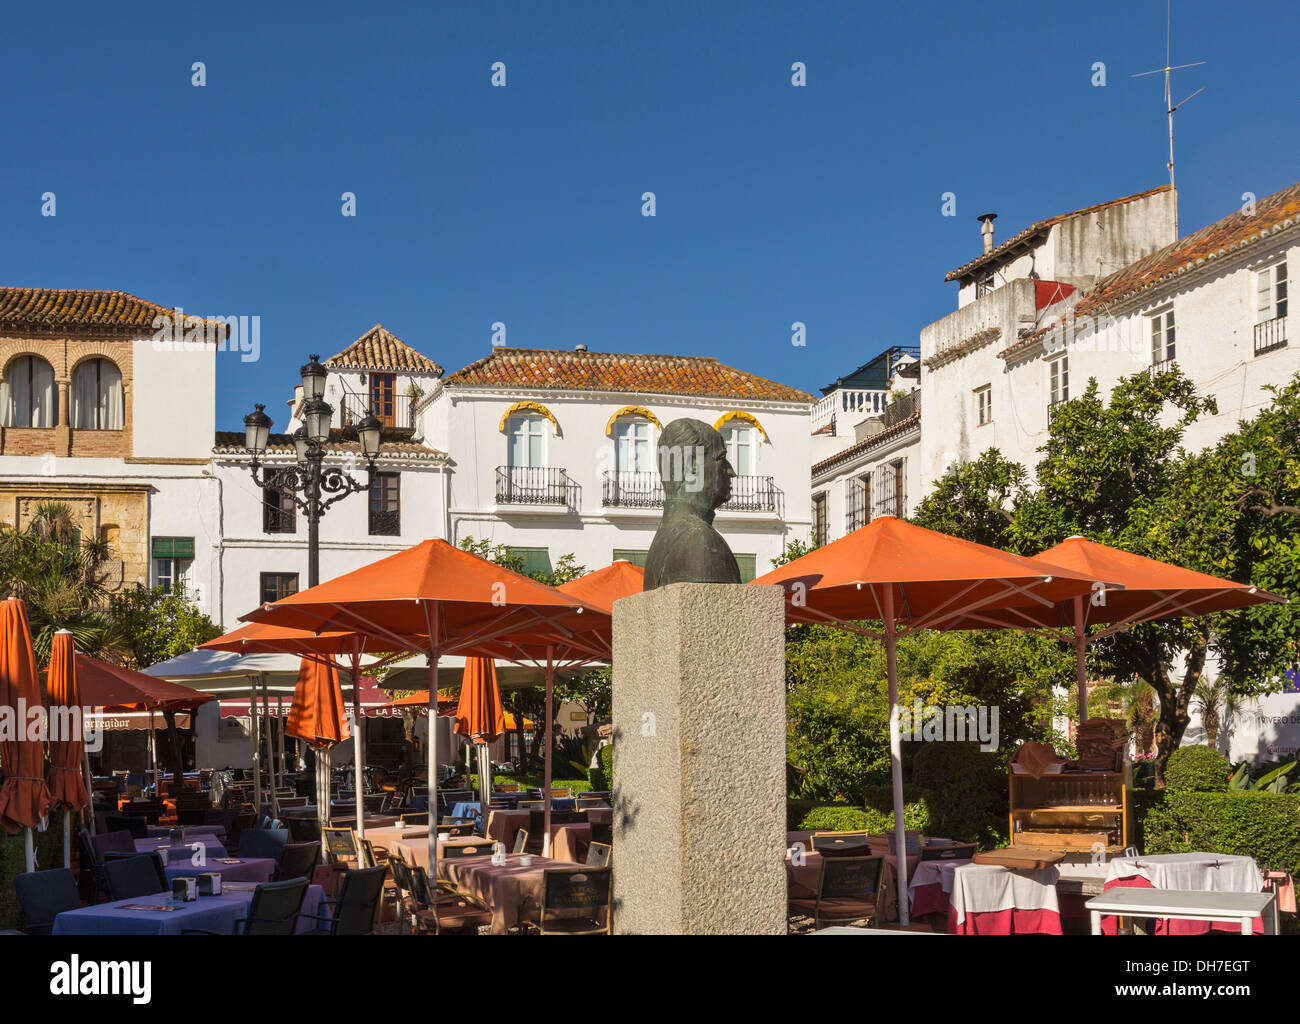 Carré ORANGE ET RESTAURANT AVEC LA STATUE, dans la vieille ville de Marbella espagne Banque D'Images